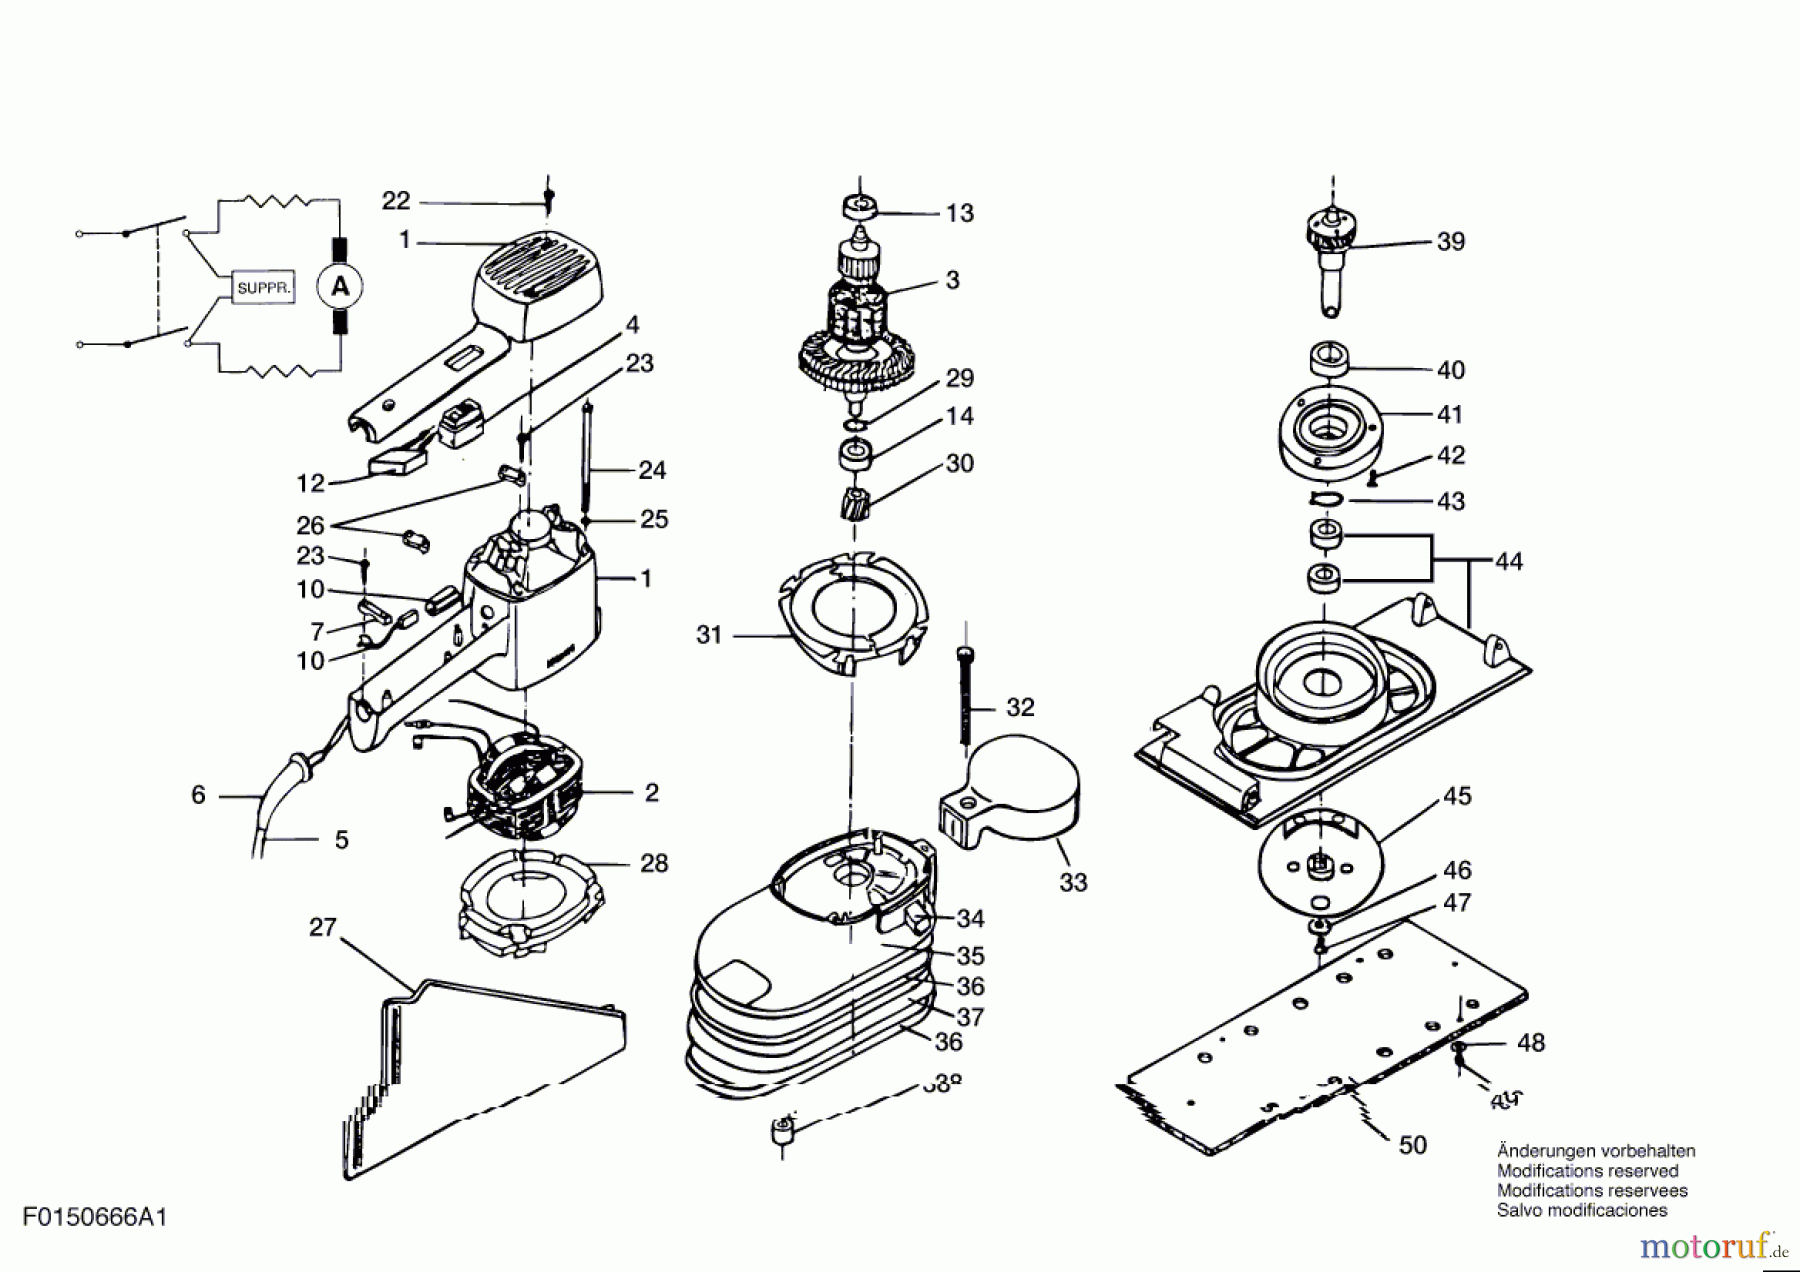  Bosch Werkzeug Schwingschleifer 666H1 Seite 1